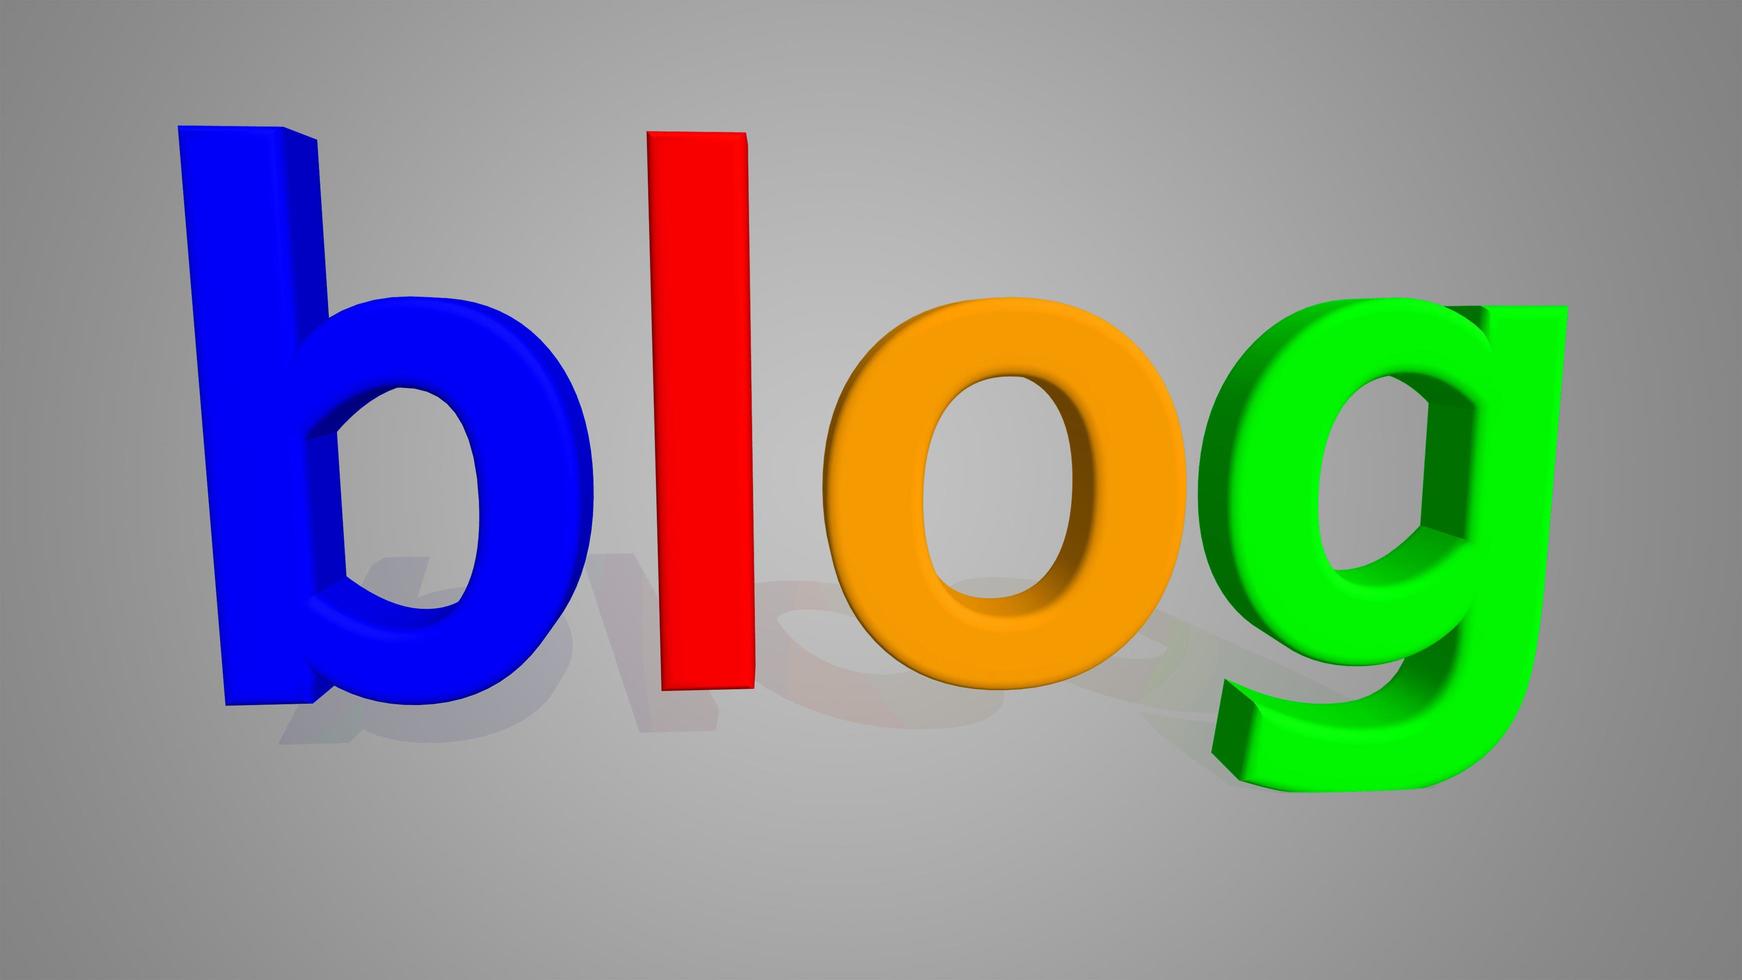 la palabra blog en letras 3d de azul rojo naranja verde foto